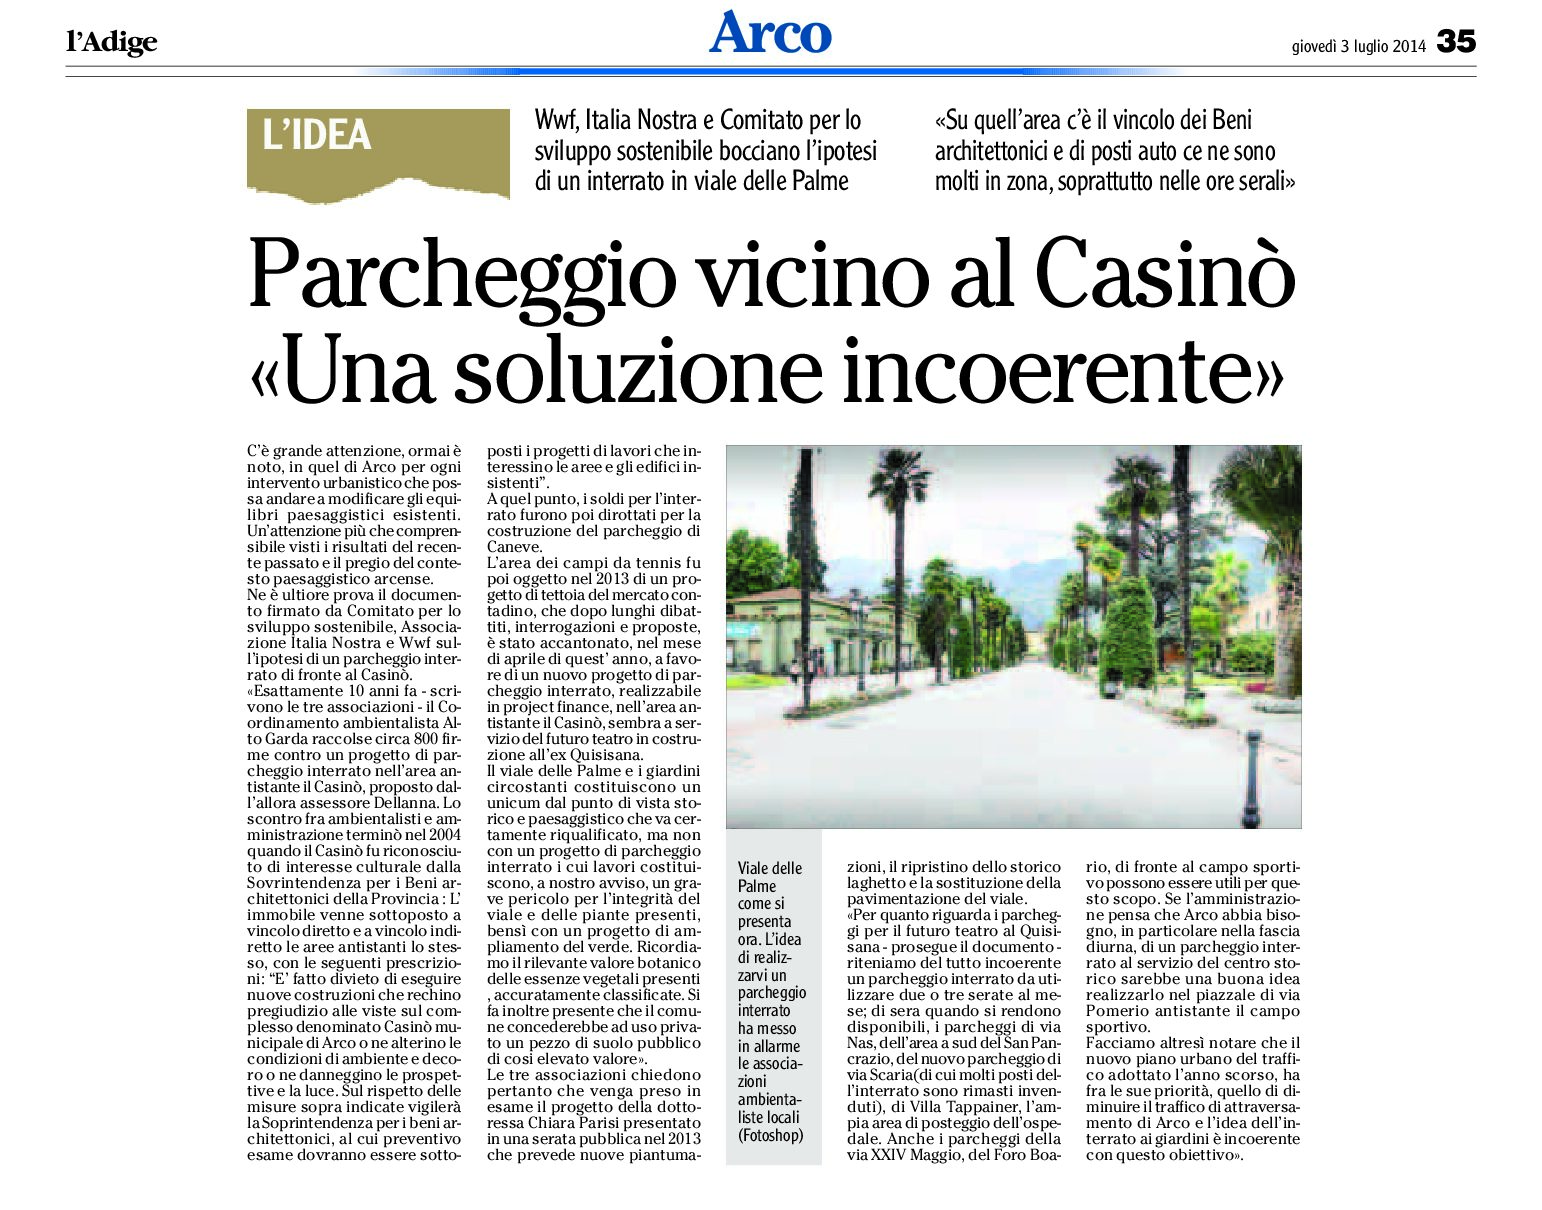 Arco: parcheggio vicino al Casinò, una soluzione incoerente per il Comitato per lo sviluppo sostenibile, Italia Nostra e Wwf